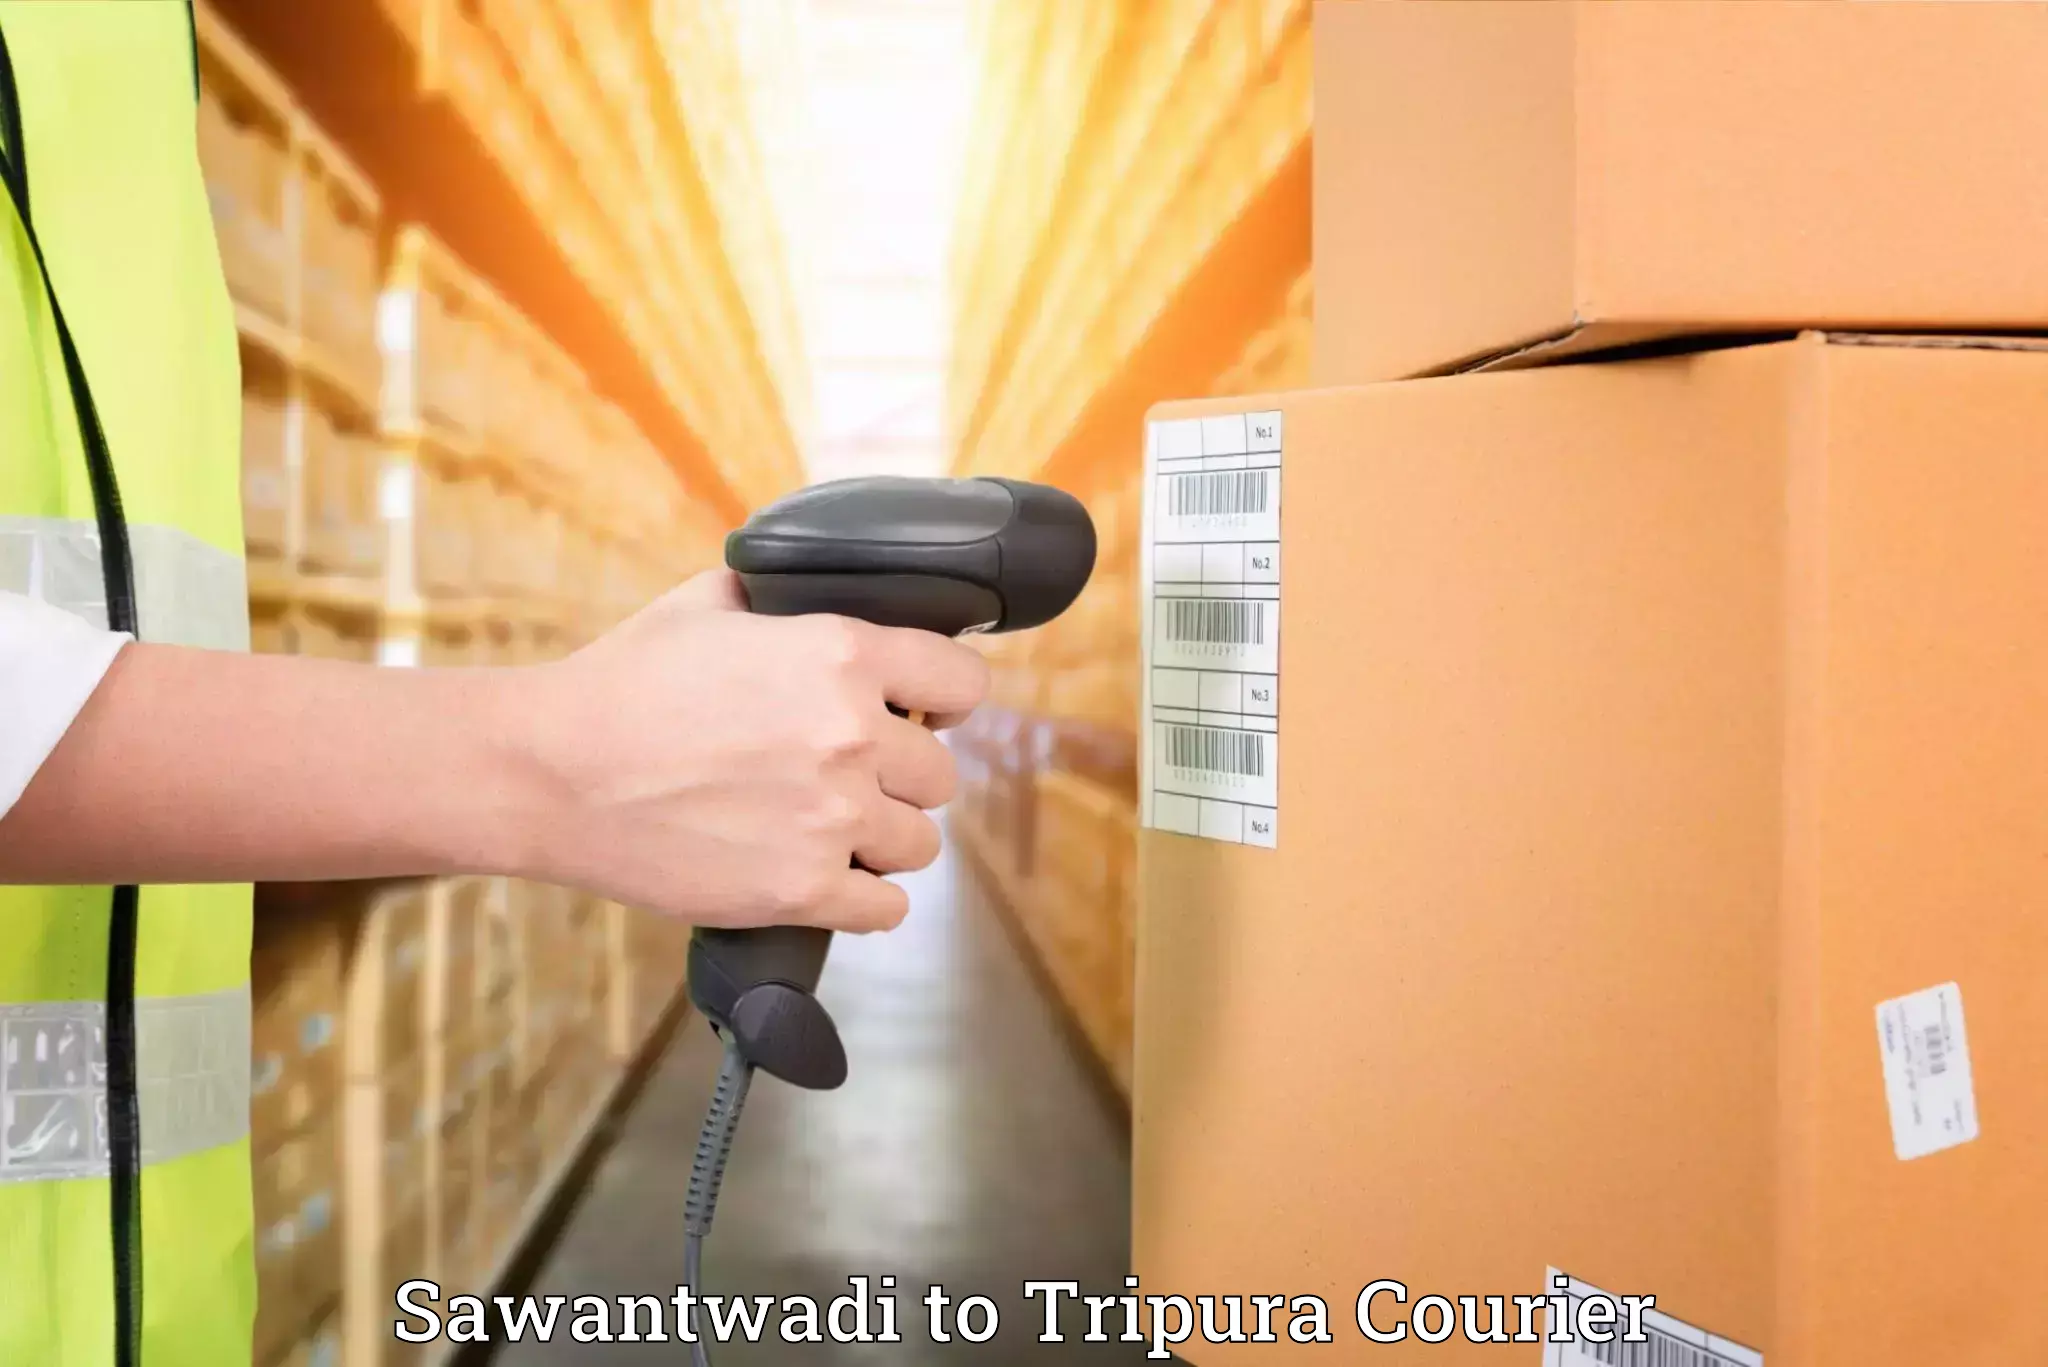 Furniture moving experts Sawantwadi to Udaipur Tripura